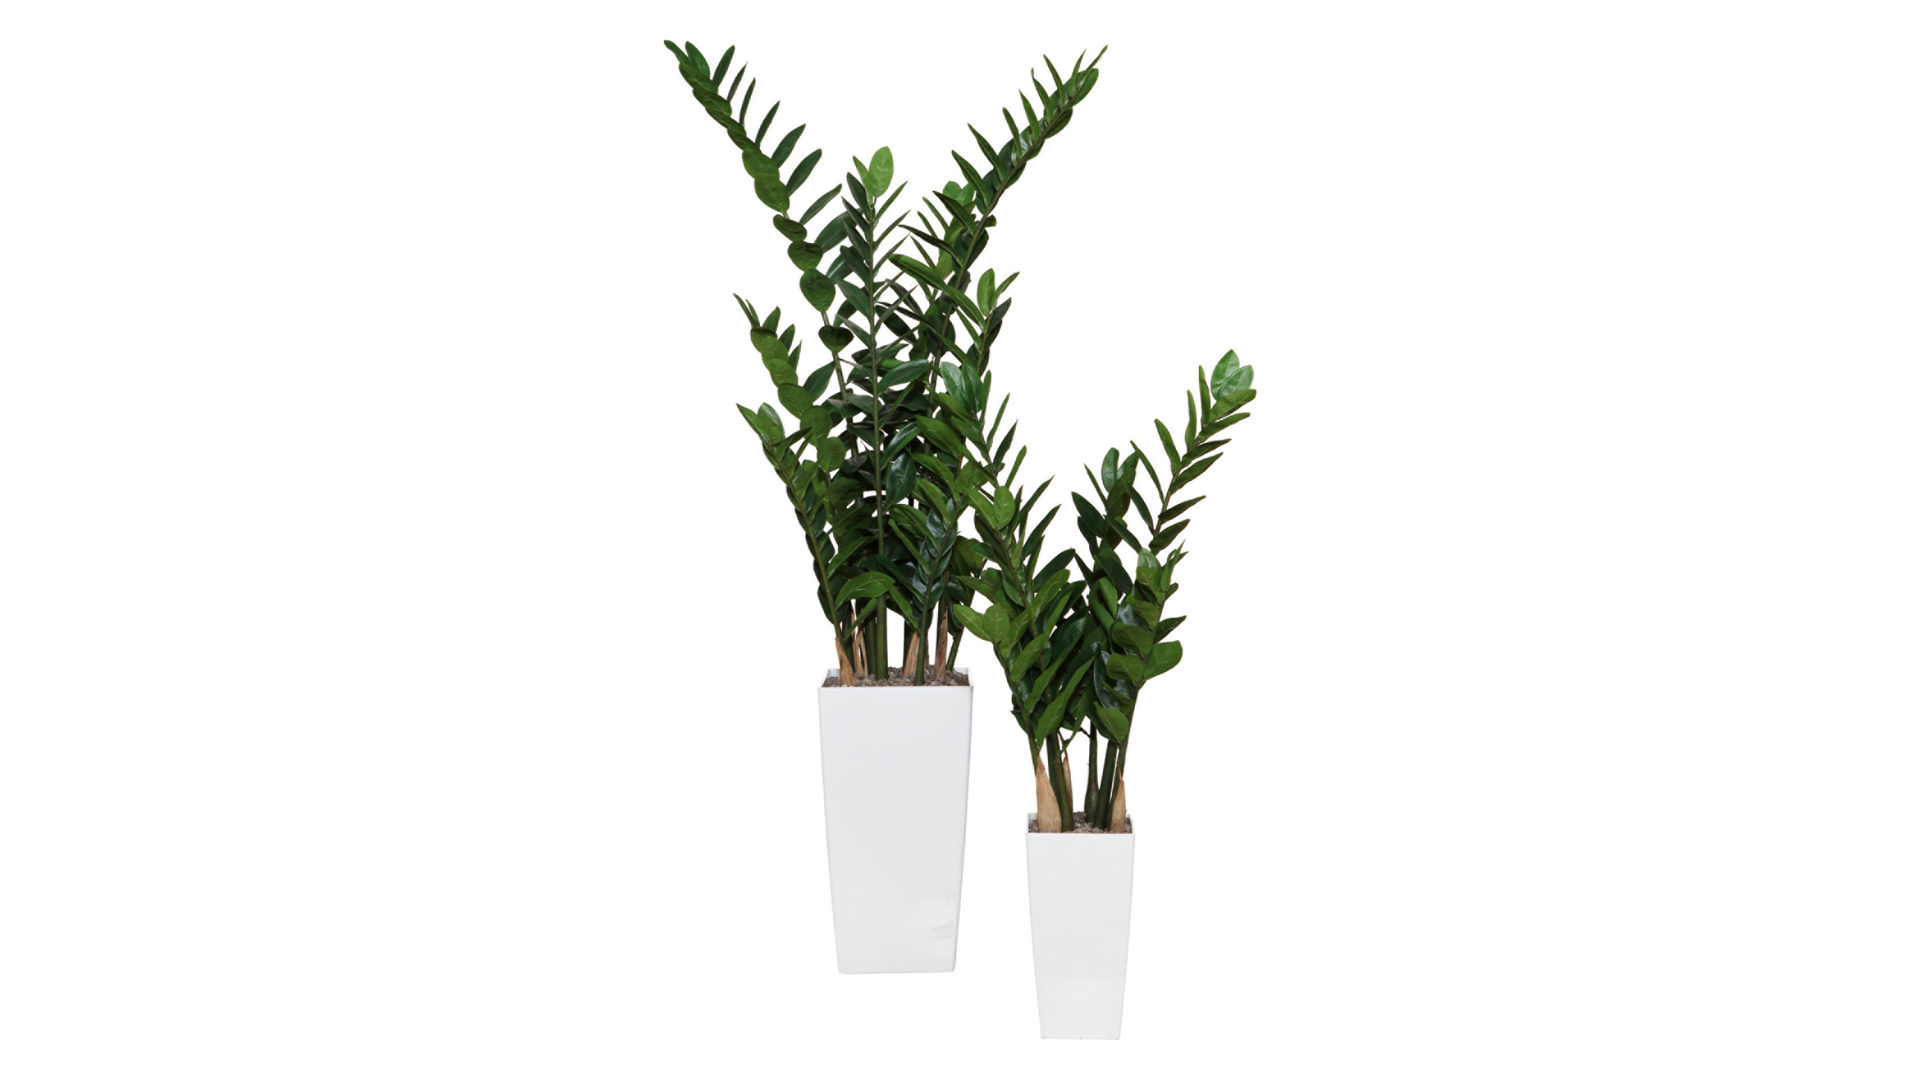 Pflanze Gasper aus Kunststoff in Grün Zamiifolia künstliche Grünpflanze - ca. 110 cm hoch